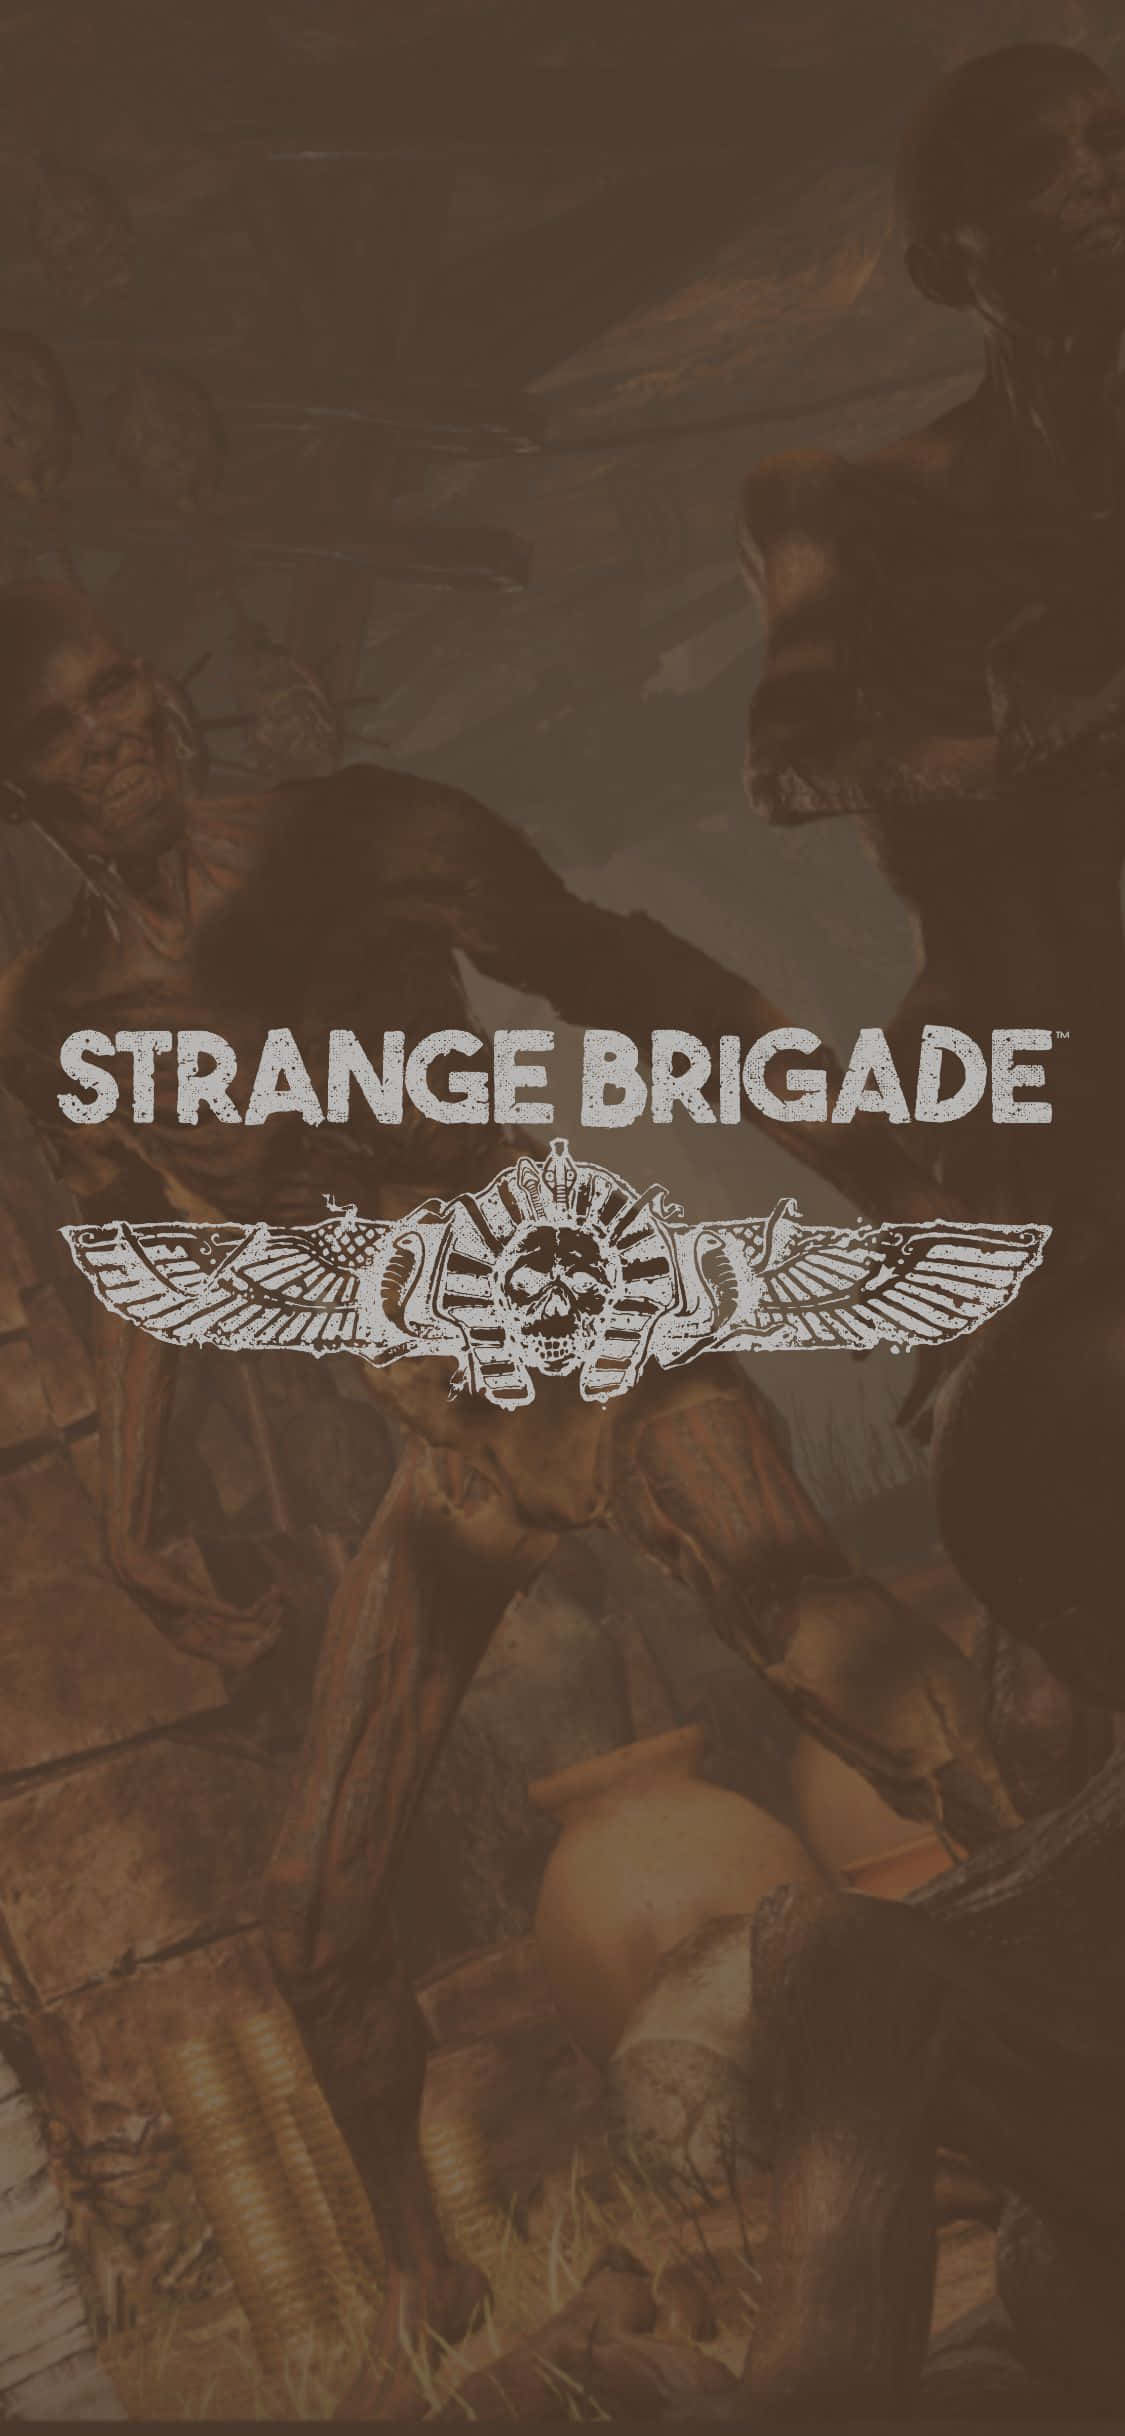 Imbarcatiin Un'avventura Con L'iphone X E Strange Brigade.